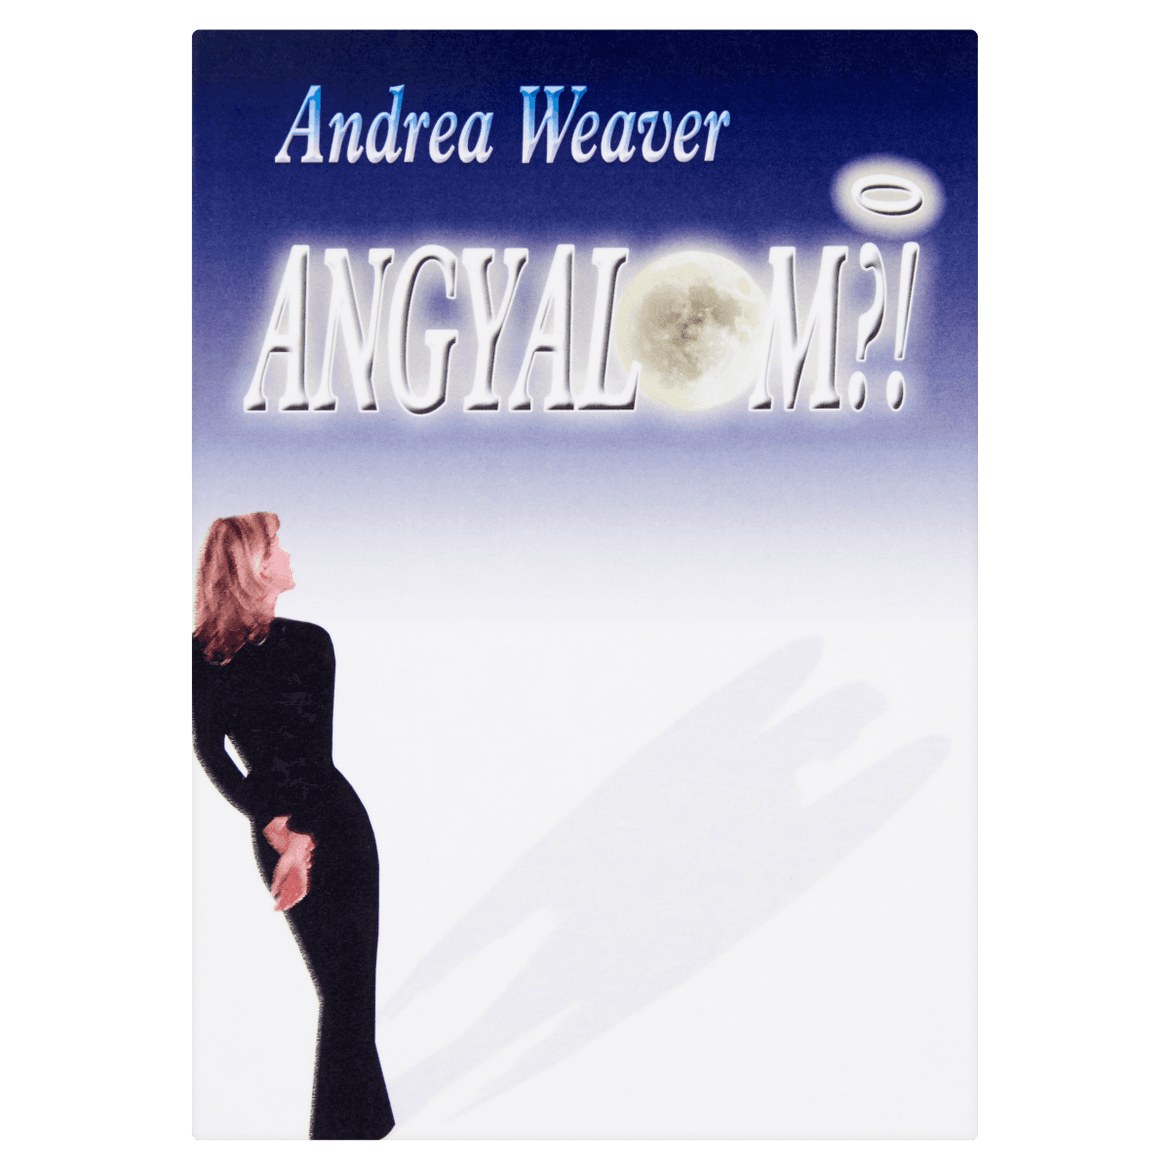 Könyv: Andrea Weaver: Angyalom ?! (adómentes beszerzés)